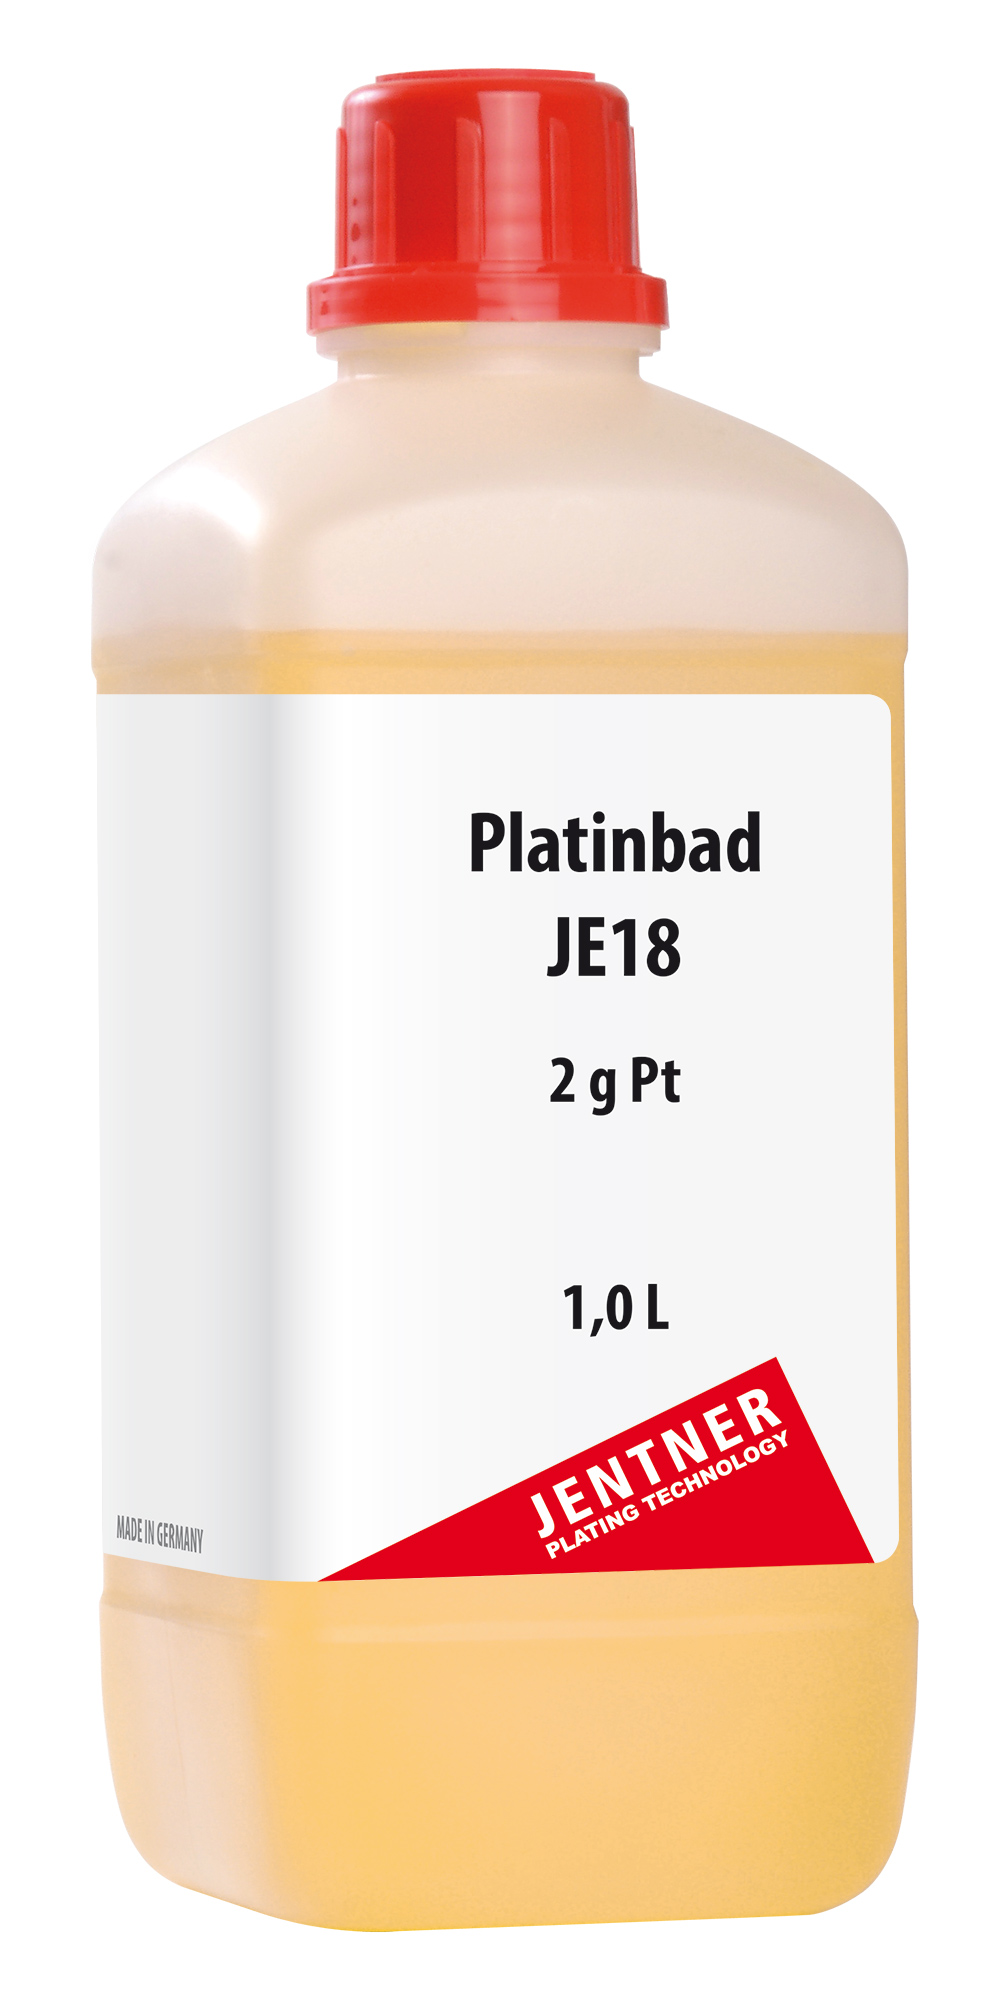 Platinum Bath JE18 - 2 g/L Pt